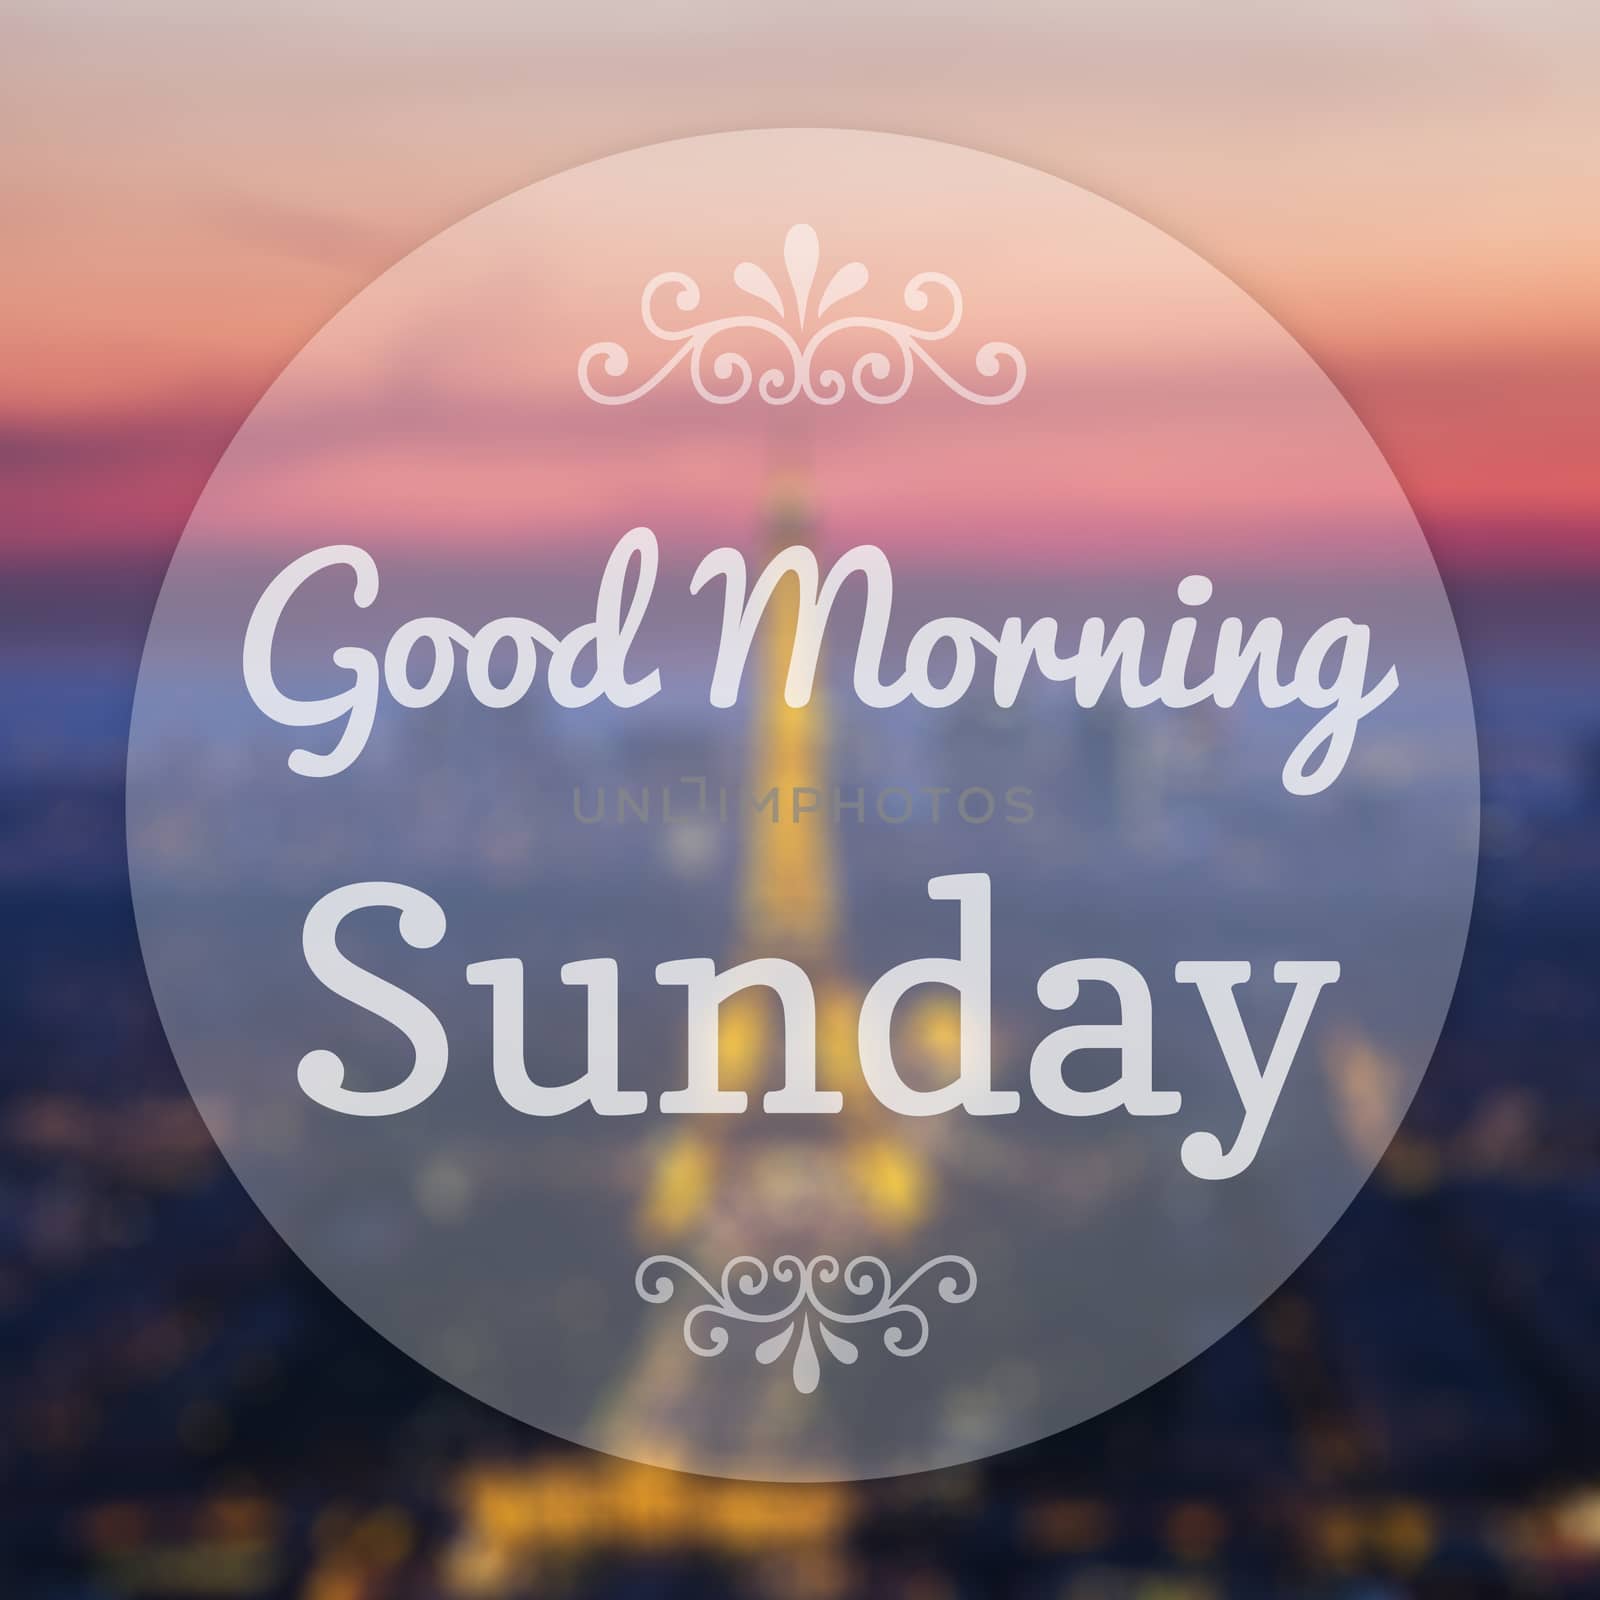 Good Morning Sunday on Eiffle Paris blur background